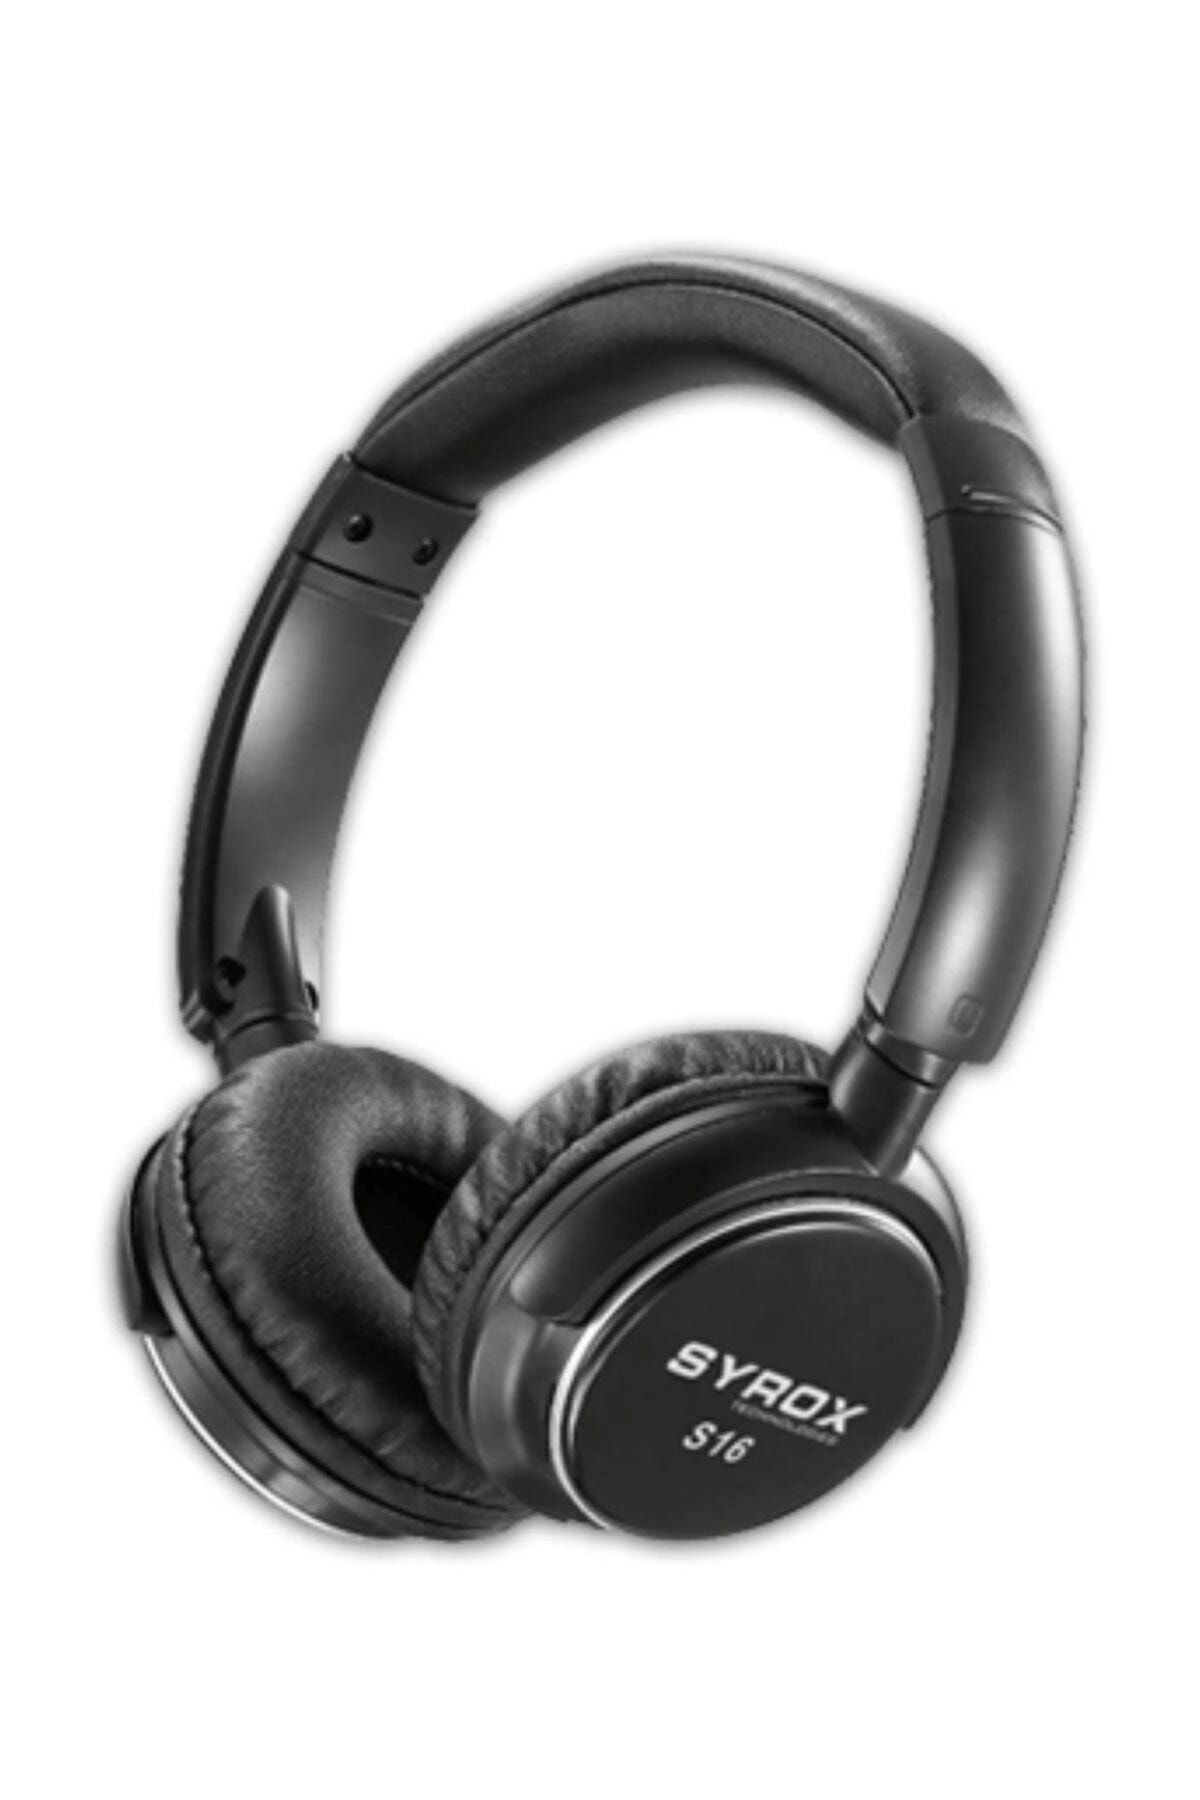 Syrox S16 Bluetooth Kulaküstü Kulaklık